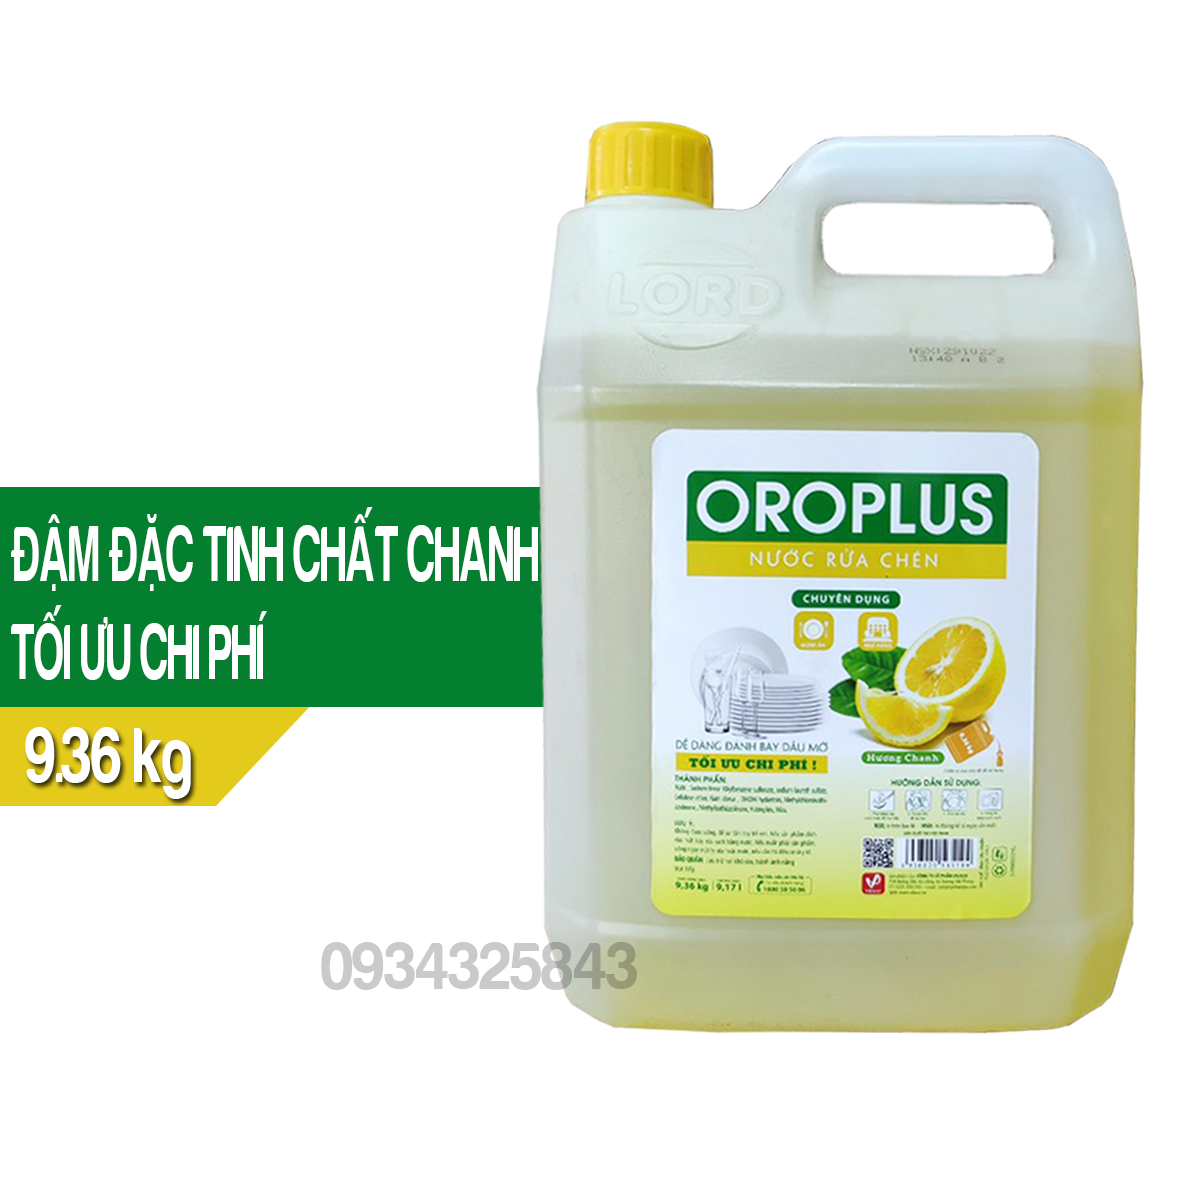 Nước rửa chén đậm đặc hương chanh Oroplus 9.36kg